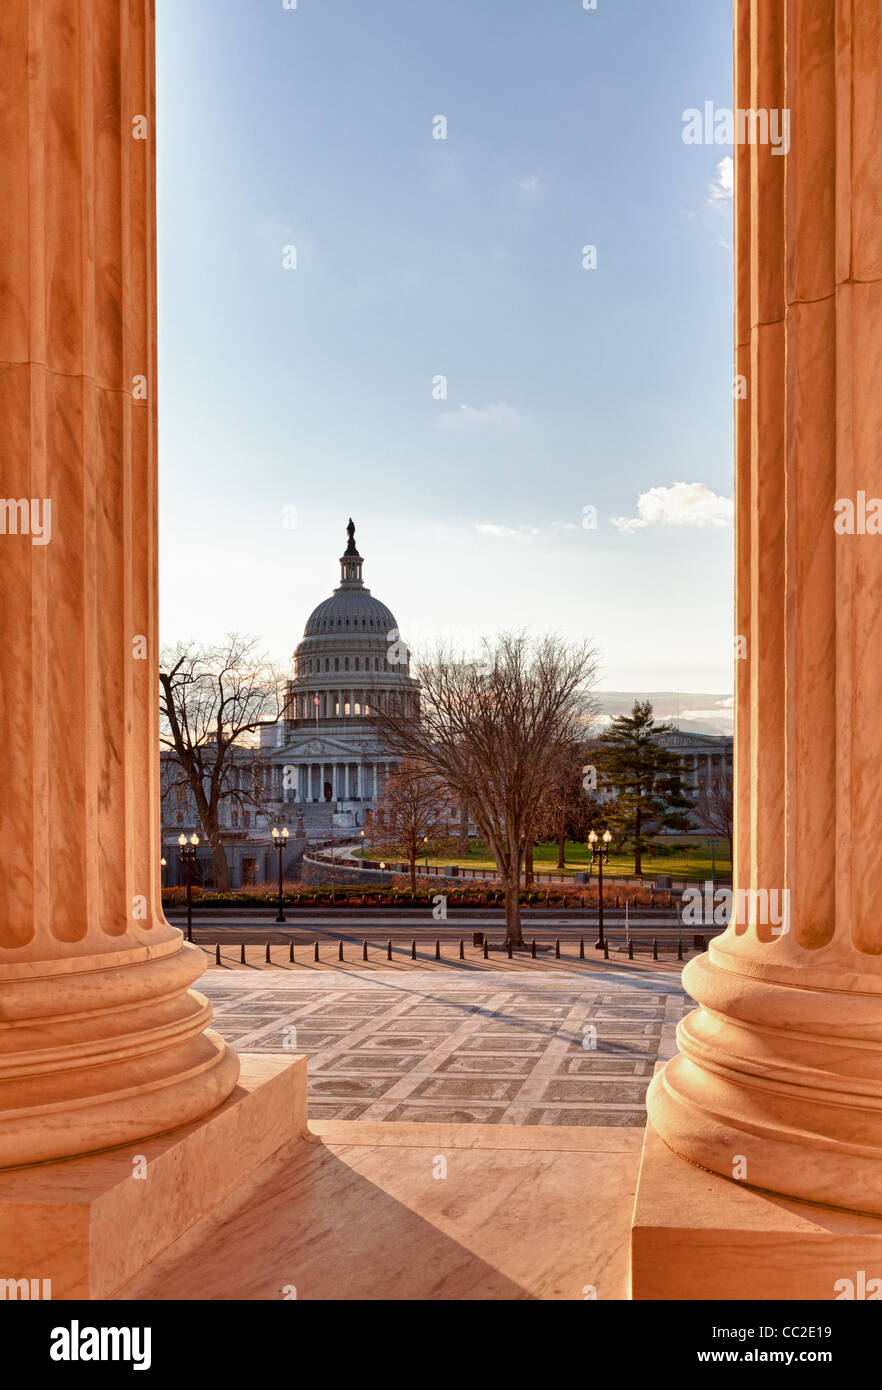 US Supreme Court in Washington DC im Winter mit Blick auf das Kapitol Stockfoto